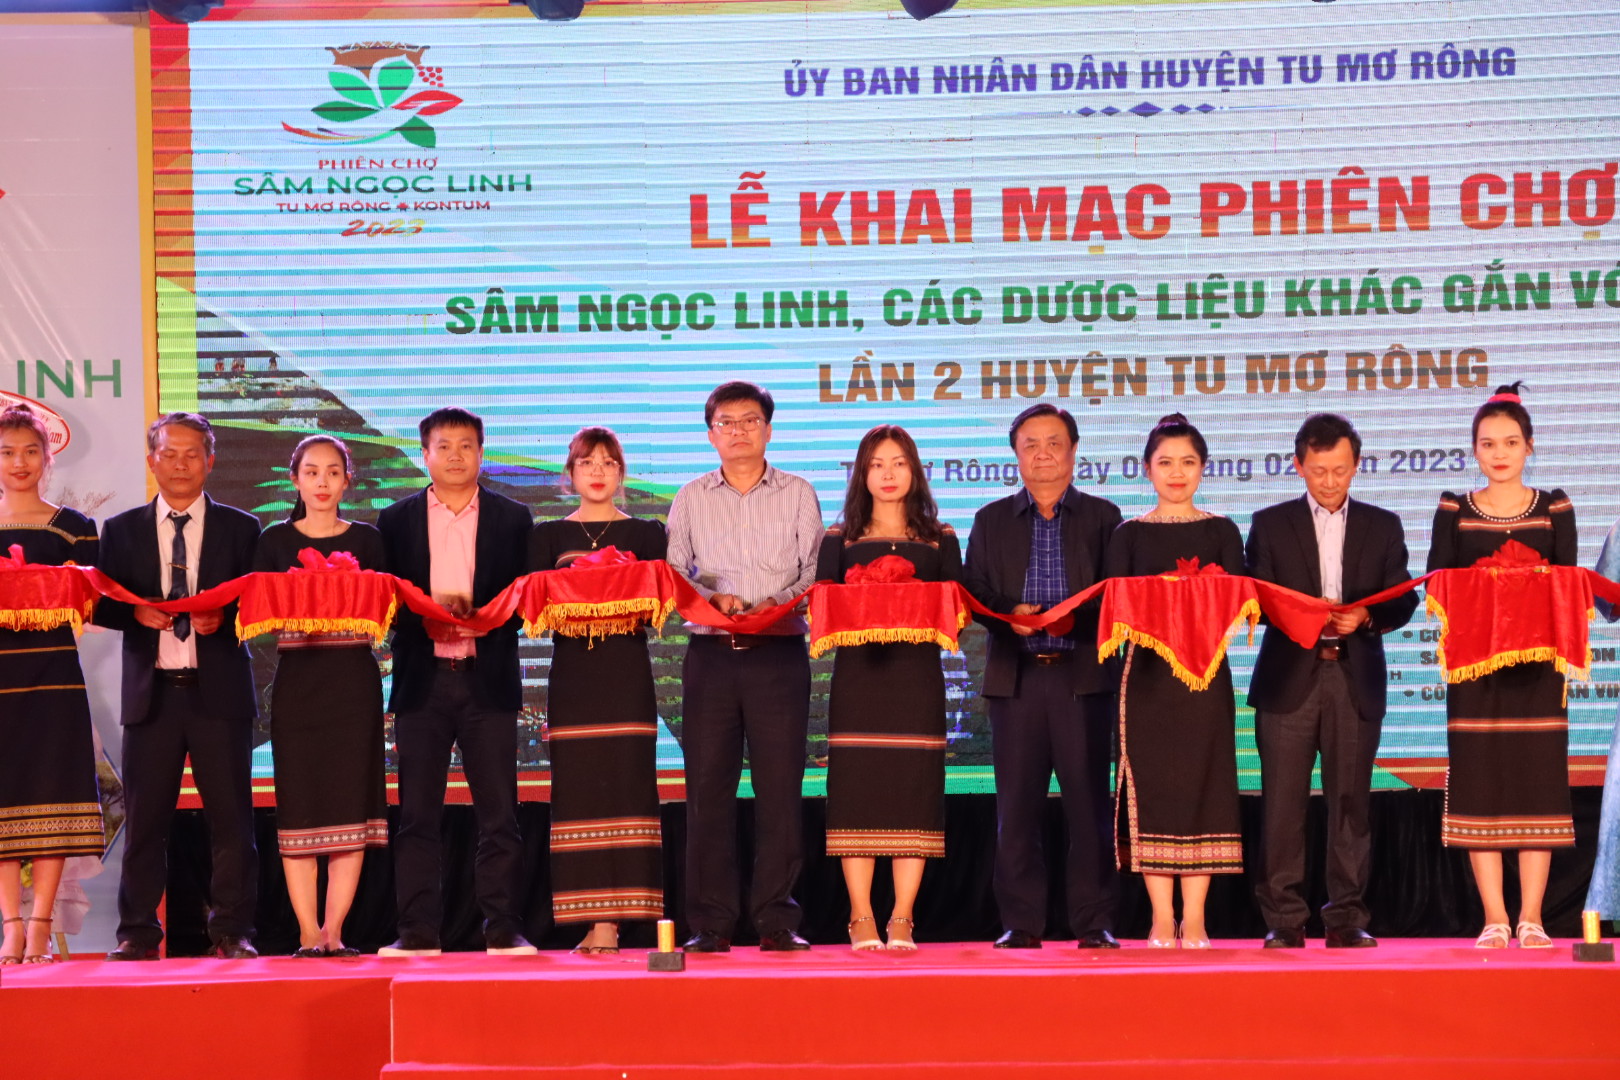 Bộ trưởng Bộ Nông nghiệp và Phát triển nông cùng đồng chí: Dương Văn Trang, Bí thư tỉnh ủy Kon Tum cùng đại diện lãnh đạo các cơ quan băng khai mạc phiên chợ sâm Ngọc Linh Kon Tum lần thứ 2, năm 2023